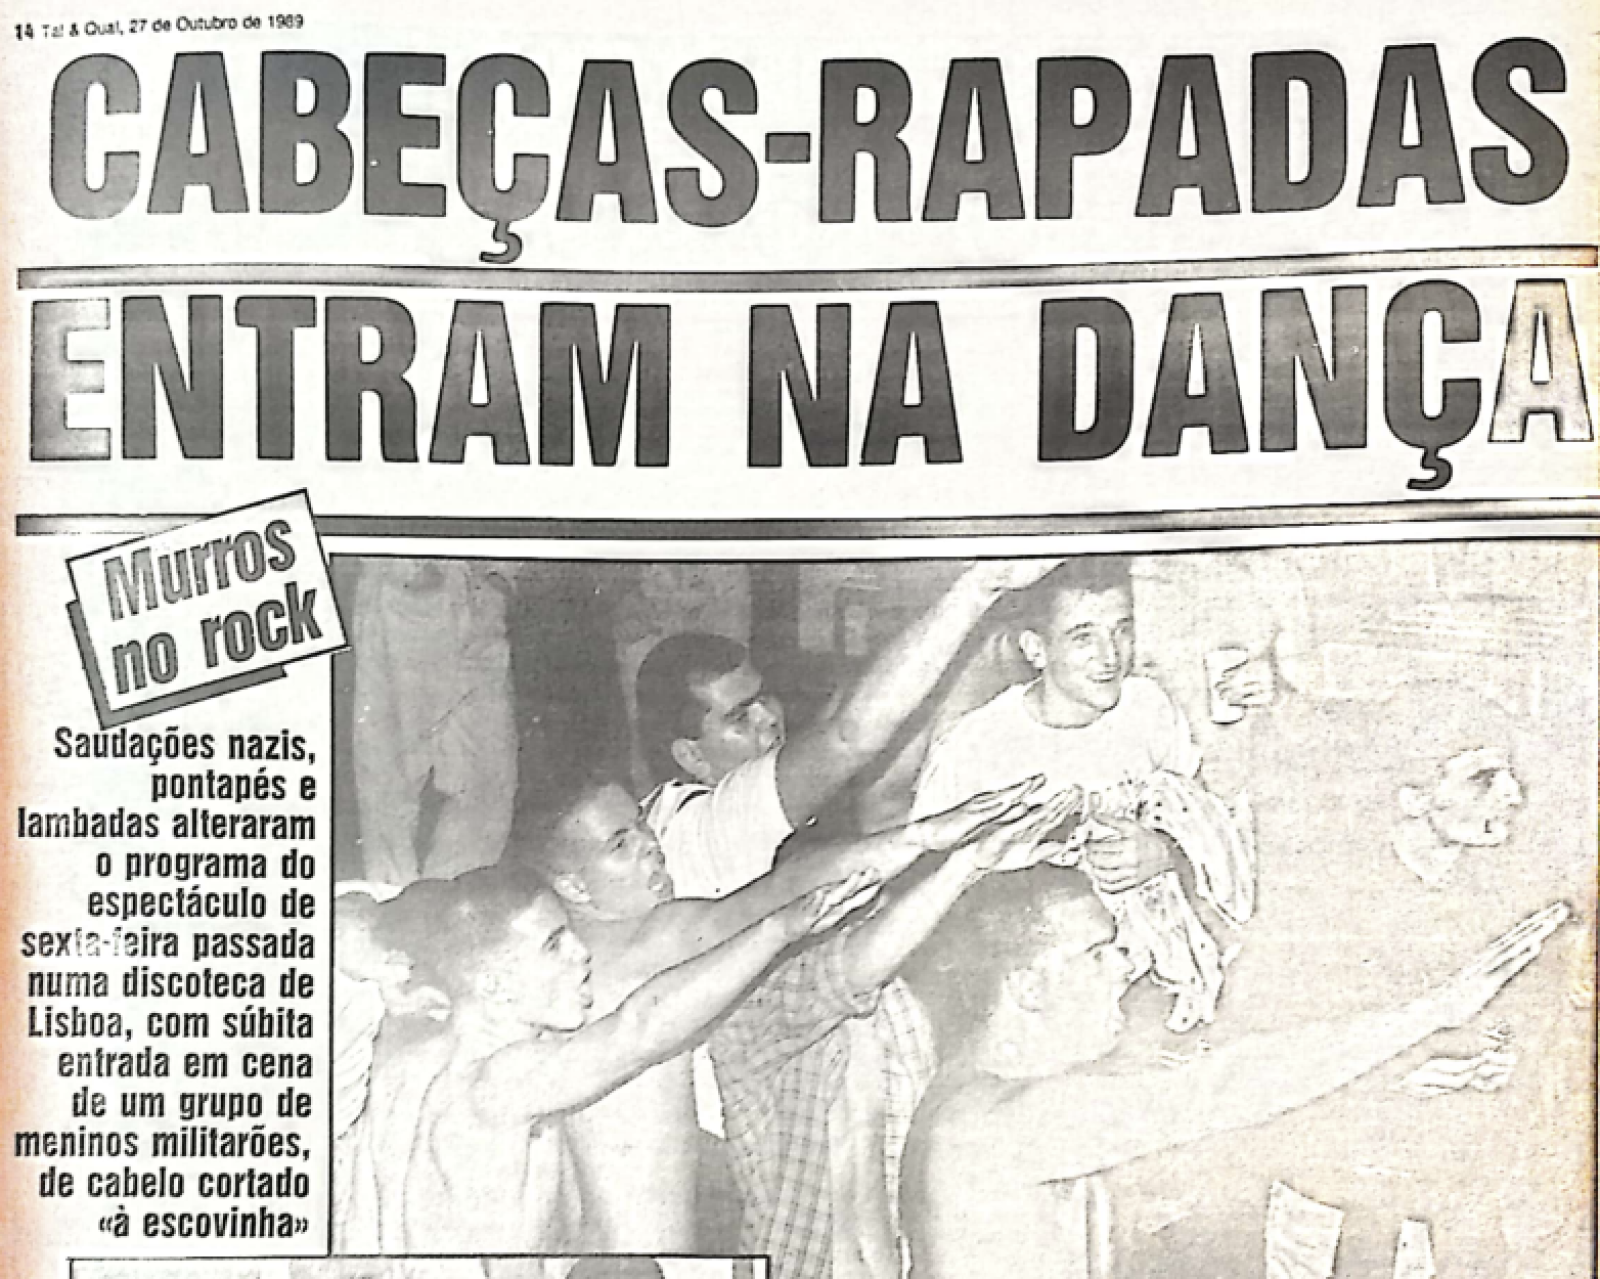 Reportagem do jornal Tal & Qual de 27 de outubro de 1989 sobre os distúrbios causados por skinheads na semana anterior, no Rock Rendez-Vous.